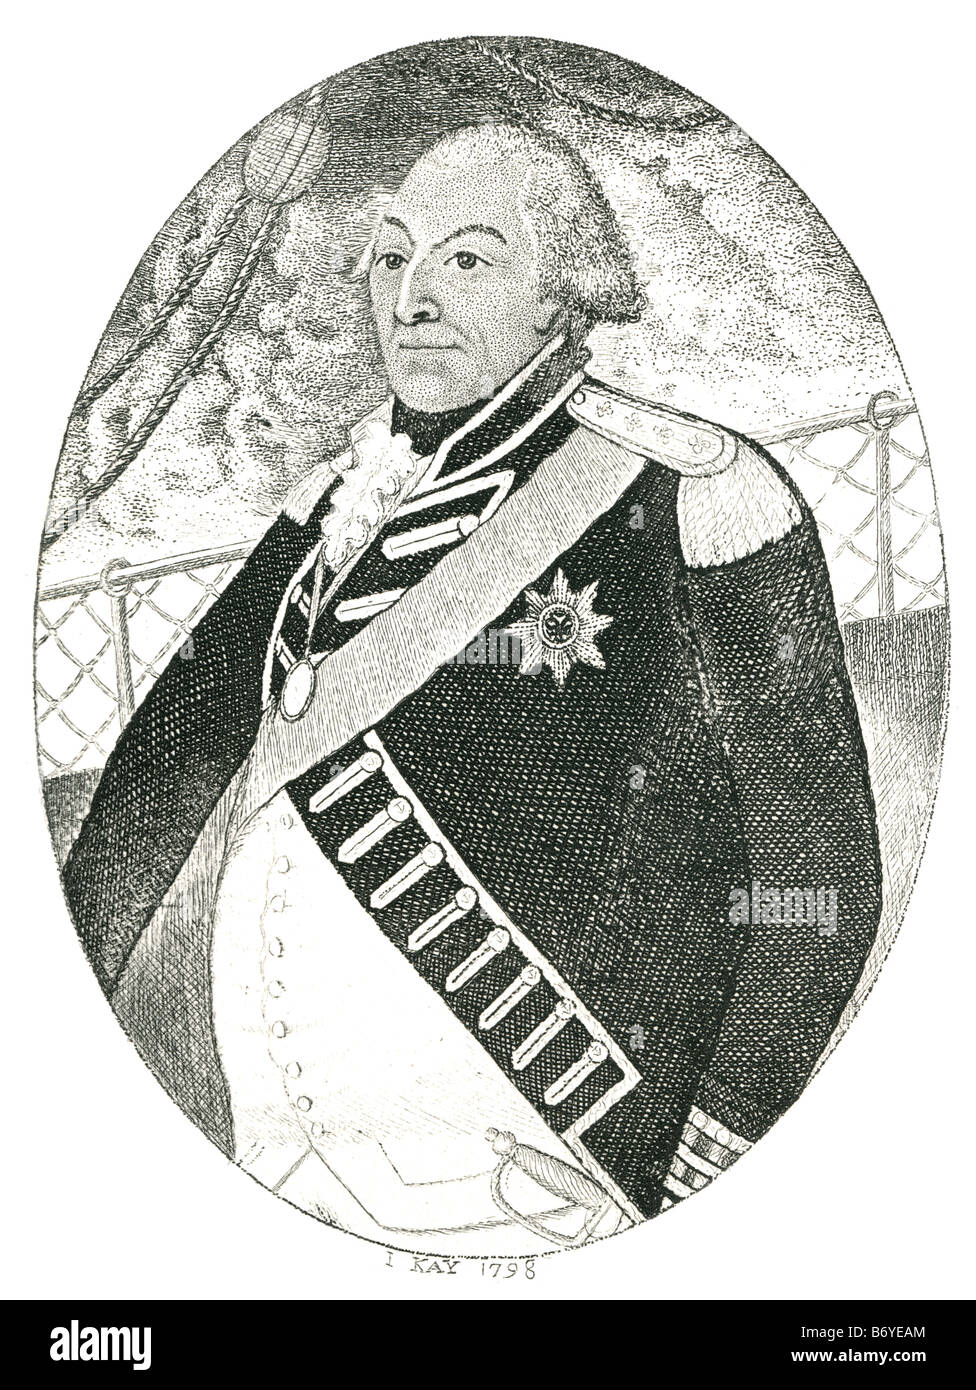 Adam Duncan, 1. Viscount Duncan (1. Juli 1731 – 4. August 1804) war ein britischer Admiral, der die niederländische Flotte aus Camperdown besiegt Stockfoto